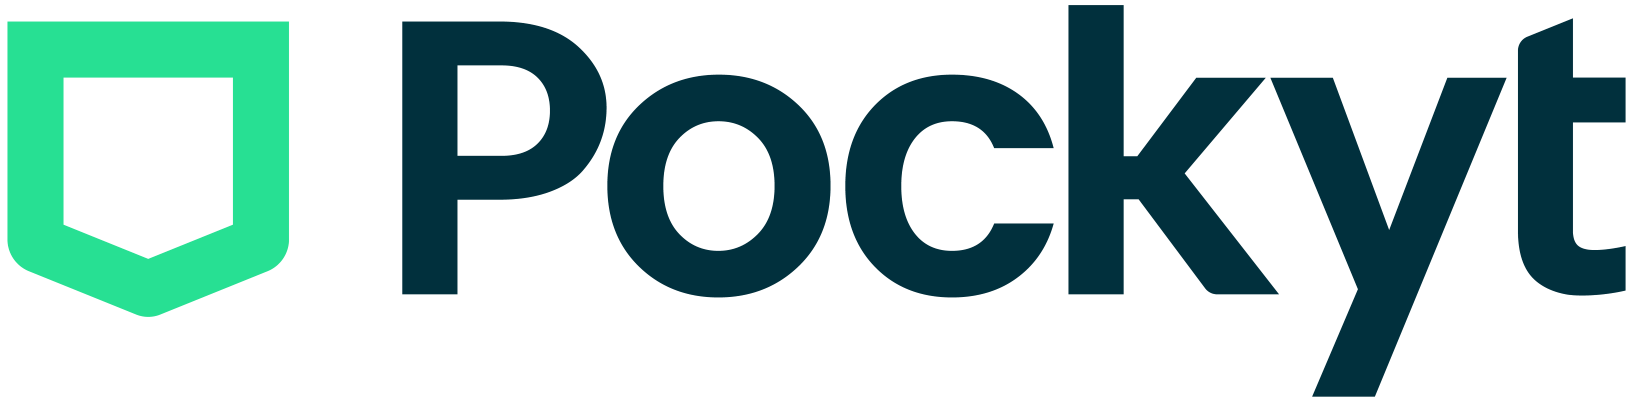 Pockyt logo